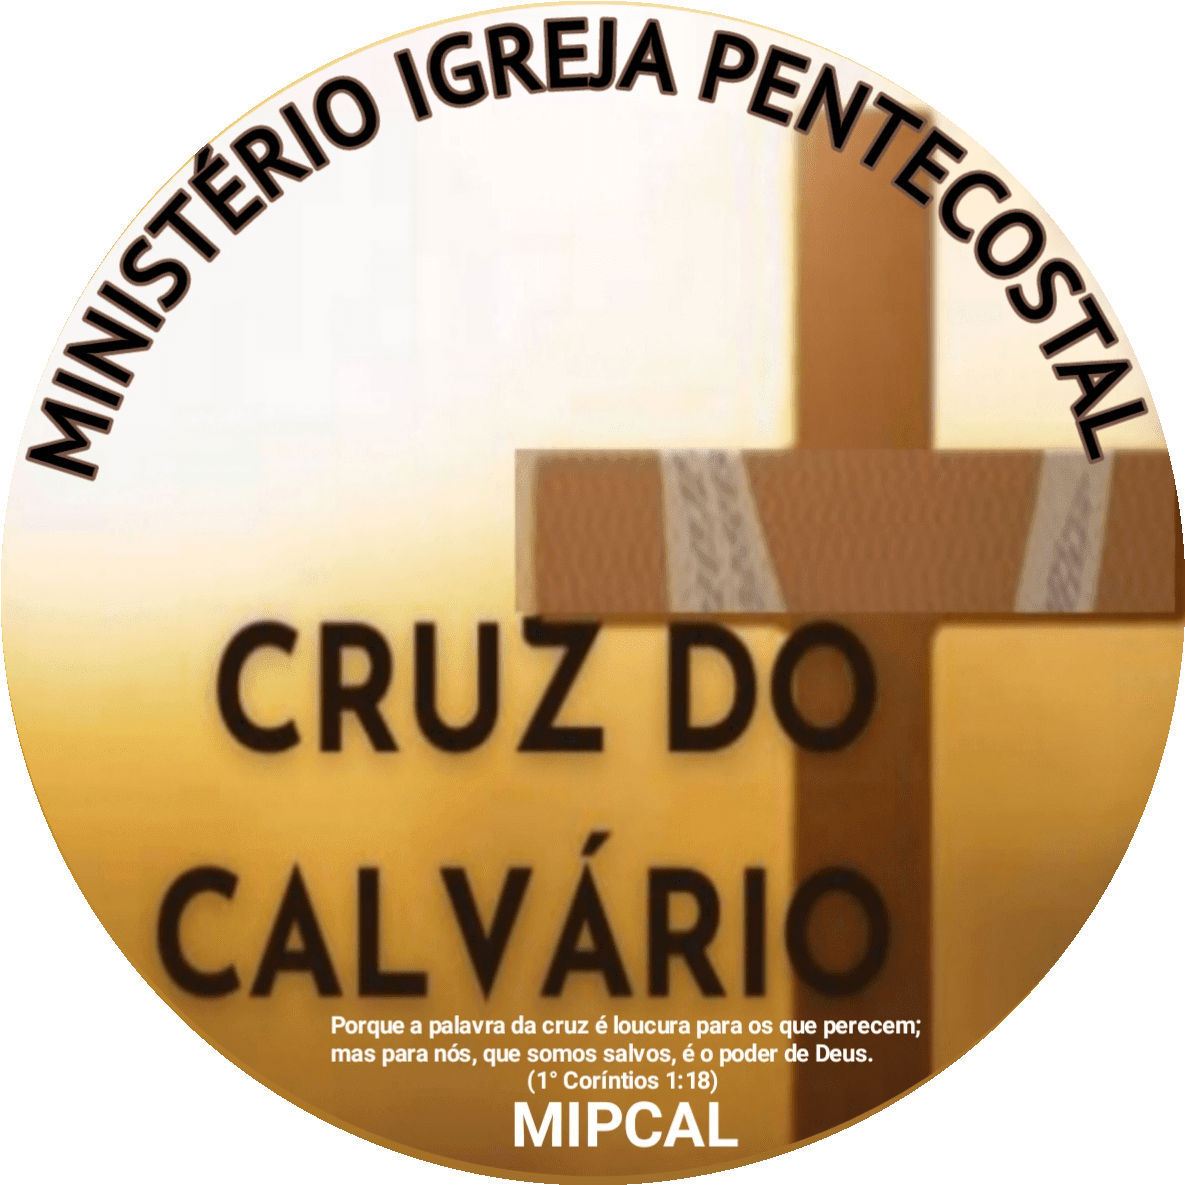 Ministerio Igreja Pentecostal Cruz do Calvário